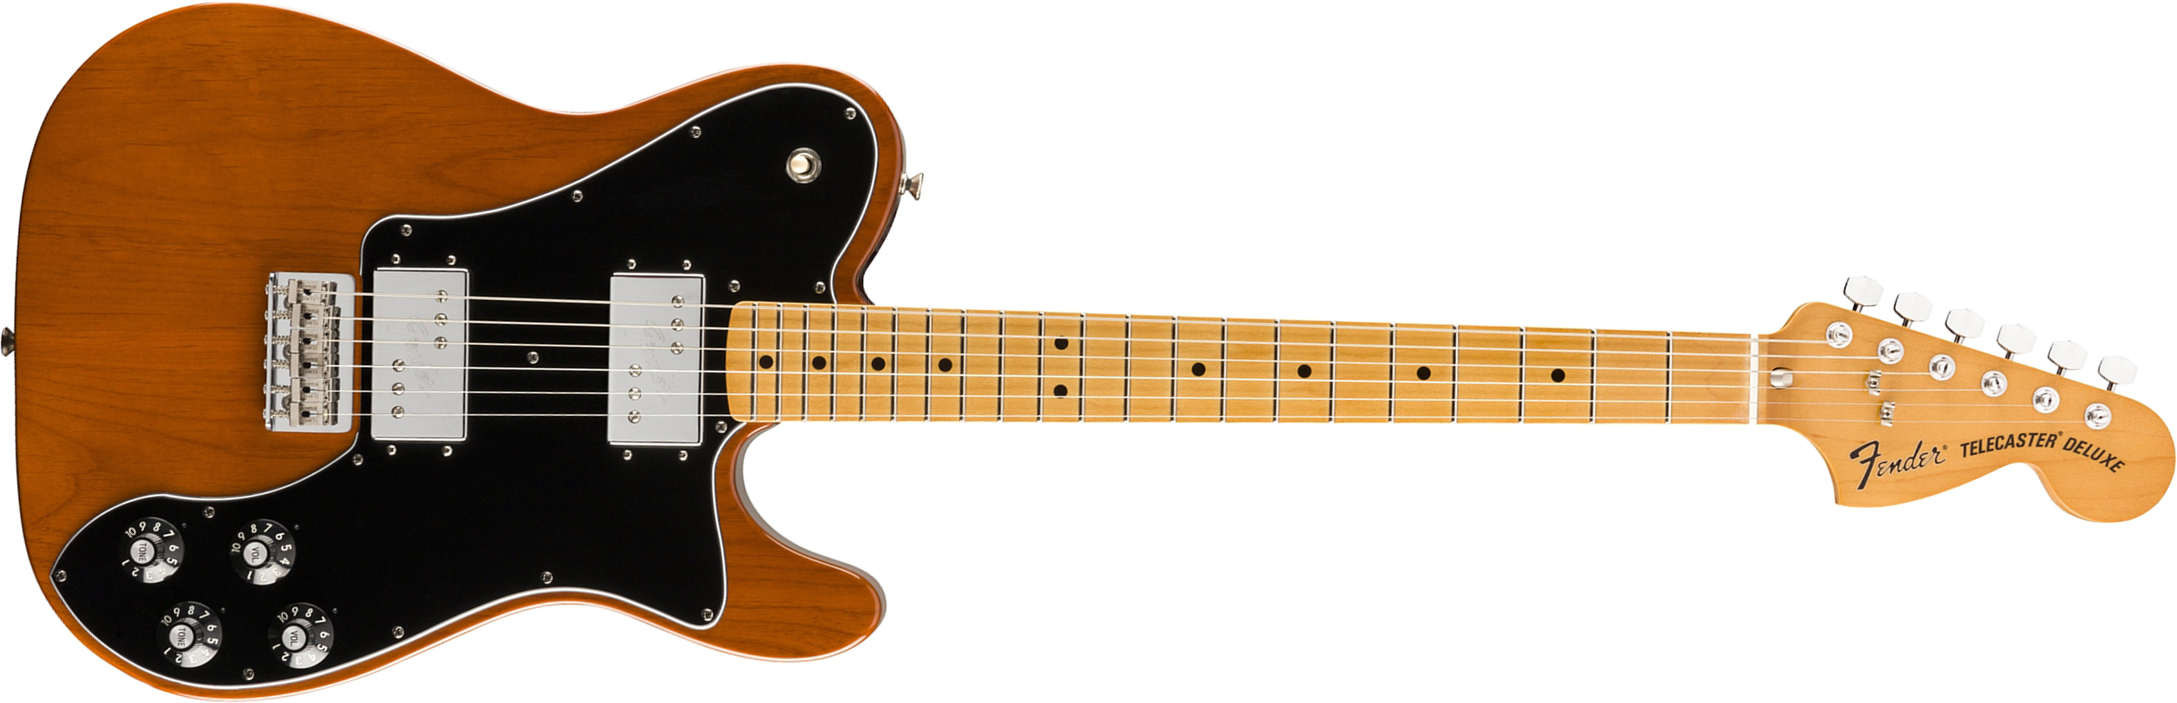 Fender Tele 70s Deluxe Vintera Vintage Mex Mn - Mocha - Guitarra eléctrica con forma de tel - Main picture